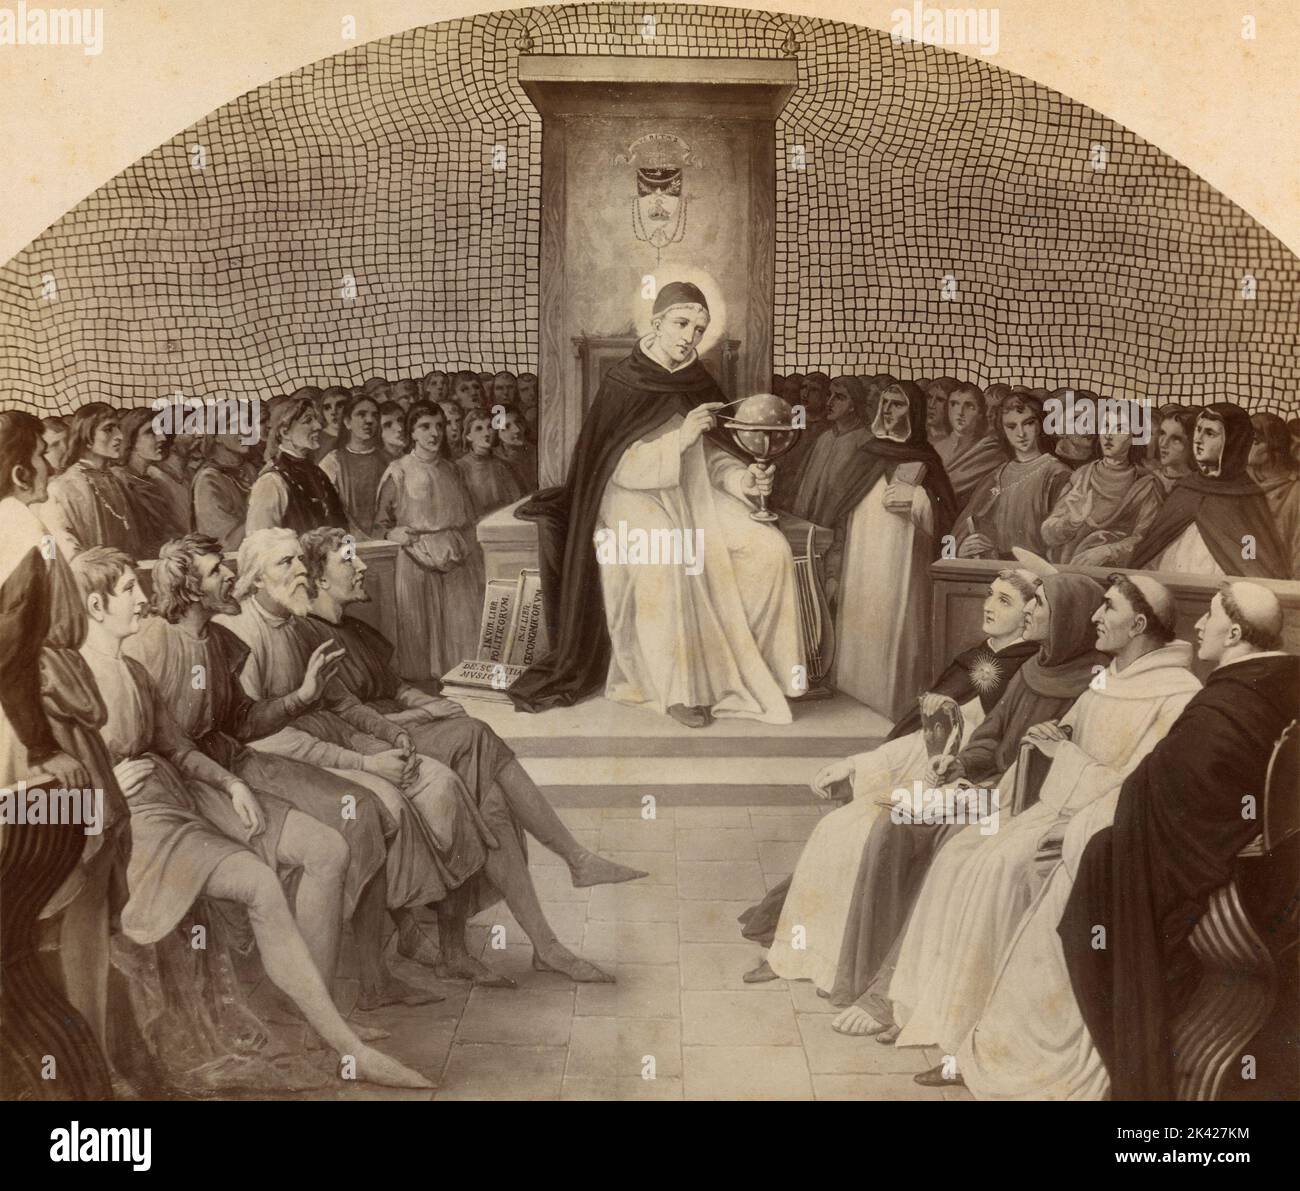 Antico concilio religioso, congresso dei saggi sacerdoti, pittura dell'artista italiano Silverio Capparoni, 1870s Foto Stock